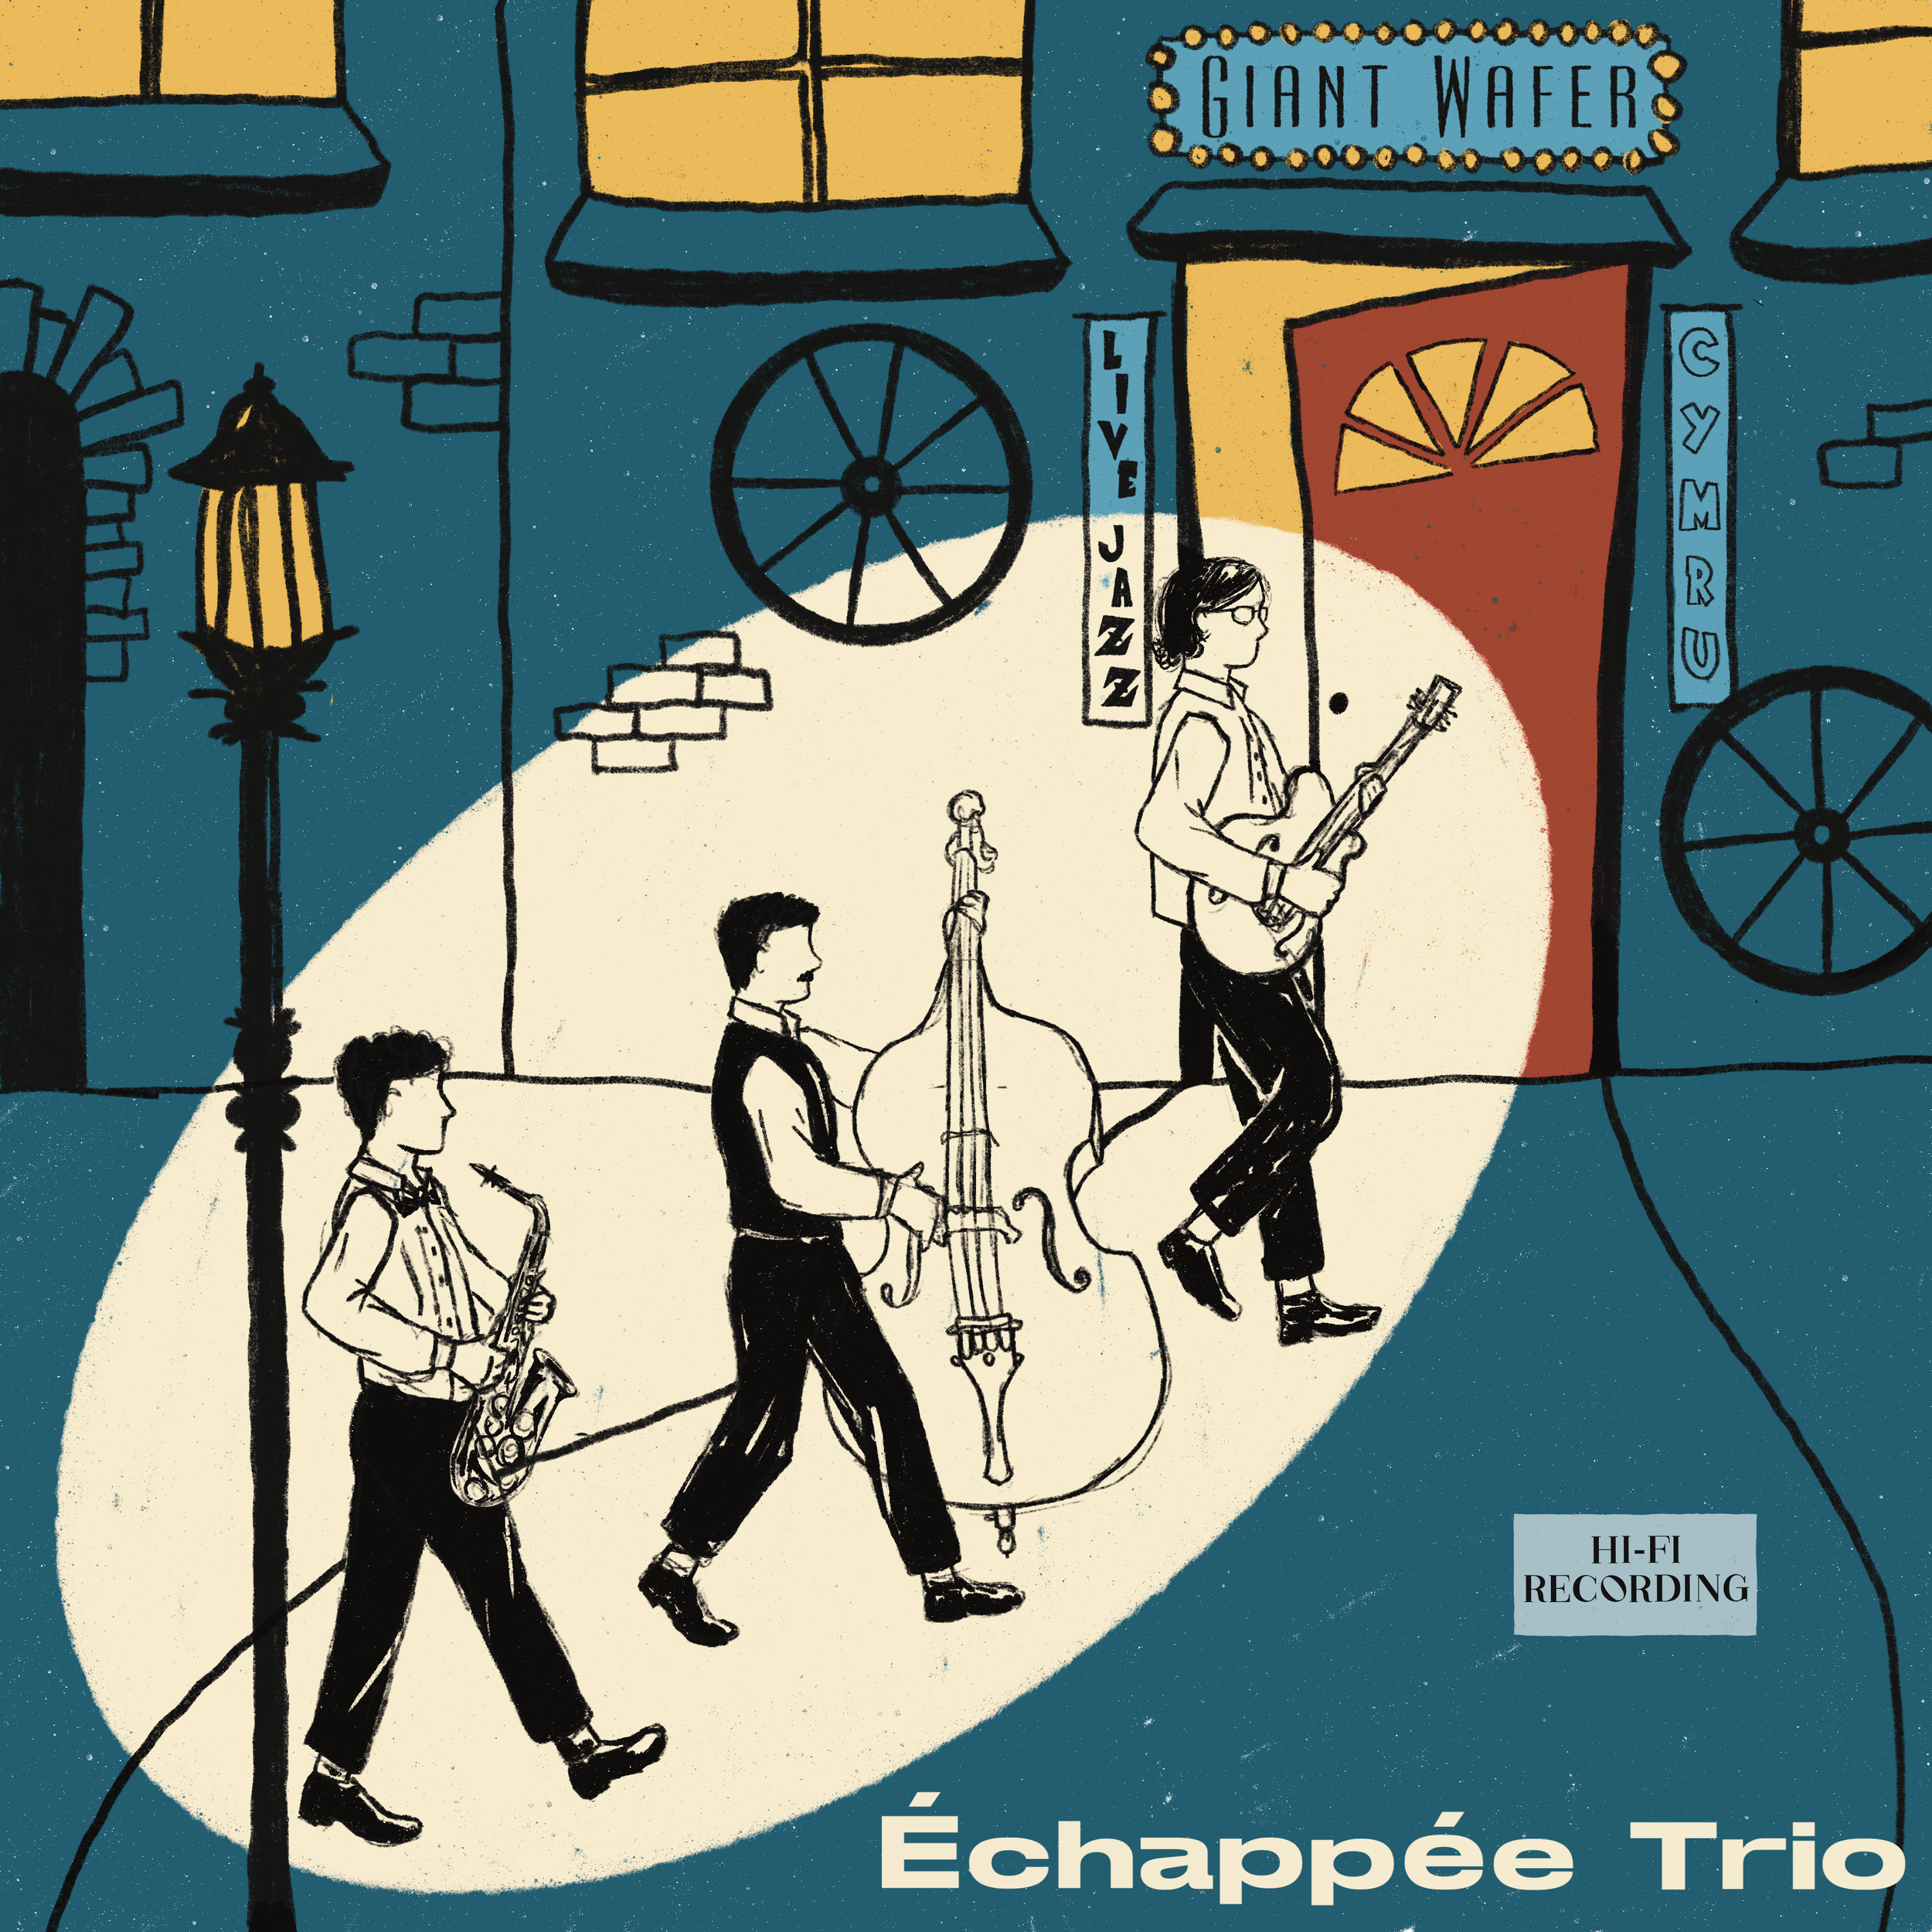 Alto Saxophone - Échappée Trio, Giant Wafer Jam